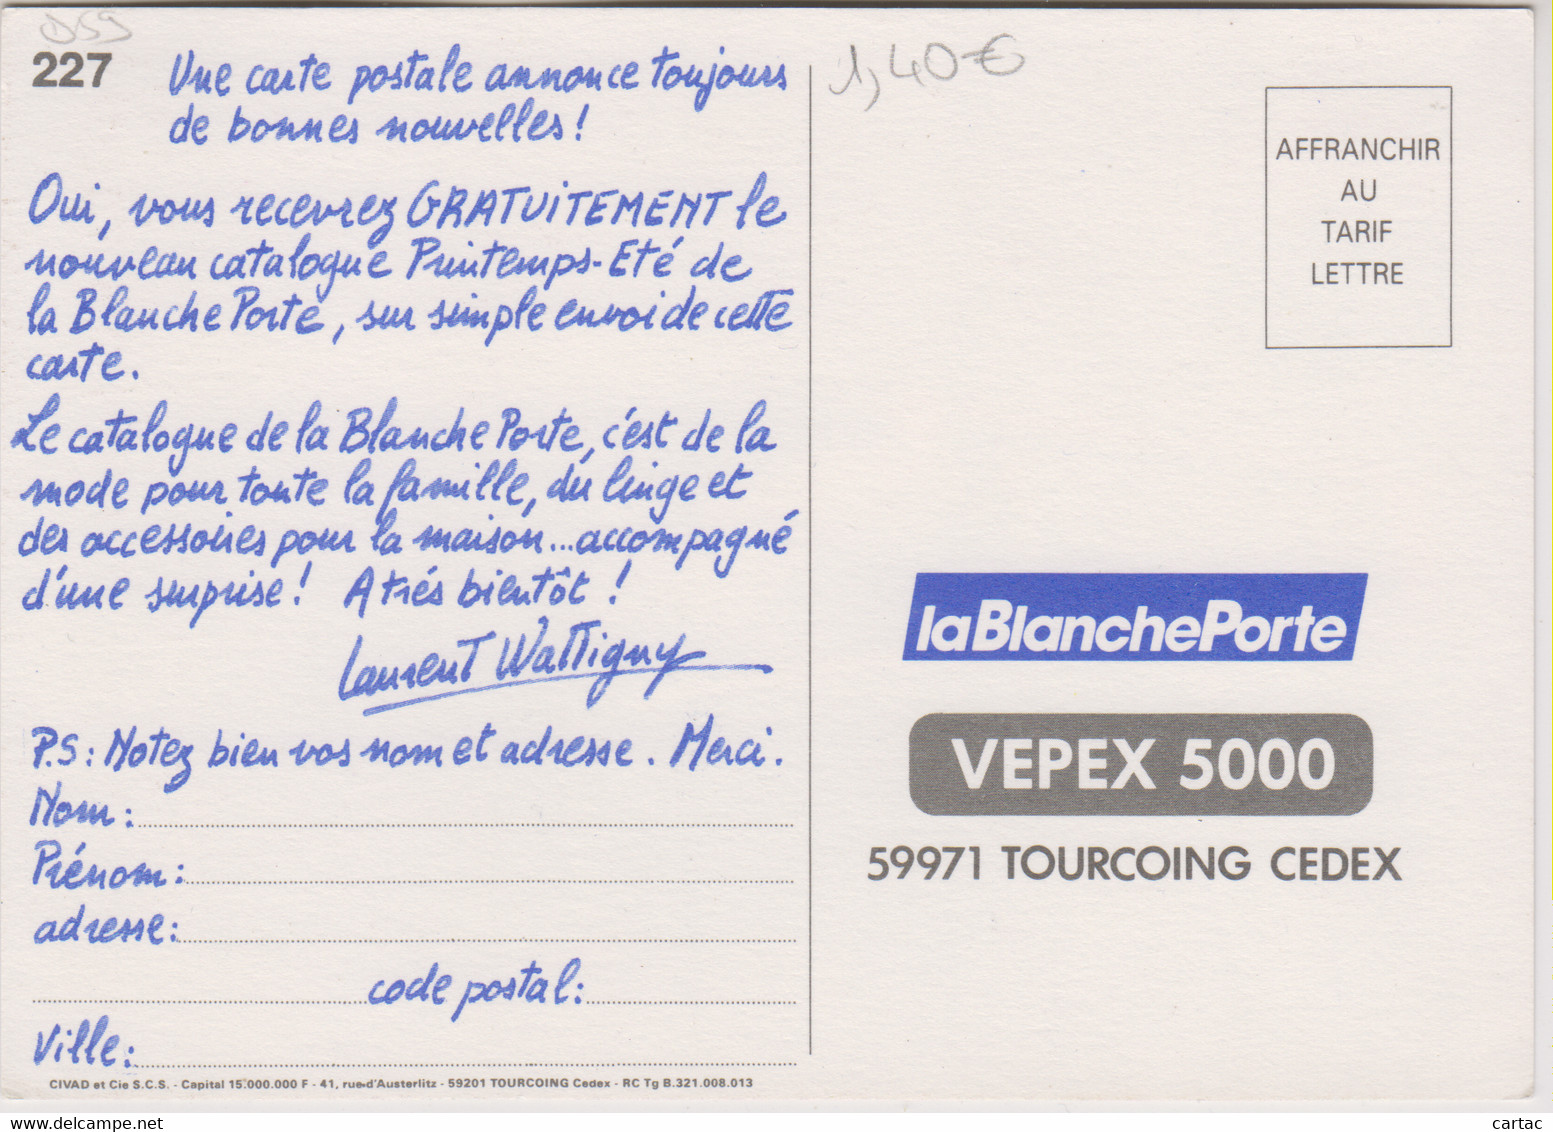 Tourcoing - D59 - TOURCOING-LA BLANCHE PORTE pour recevoir Gratuitement le  nouveau catalogue Printemps-Été -Laurent Wattigny-CHATONS